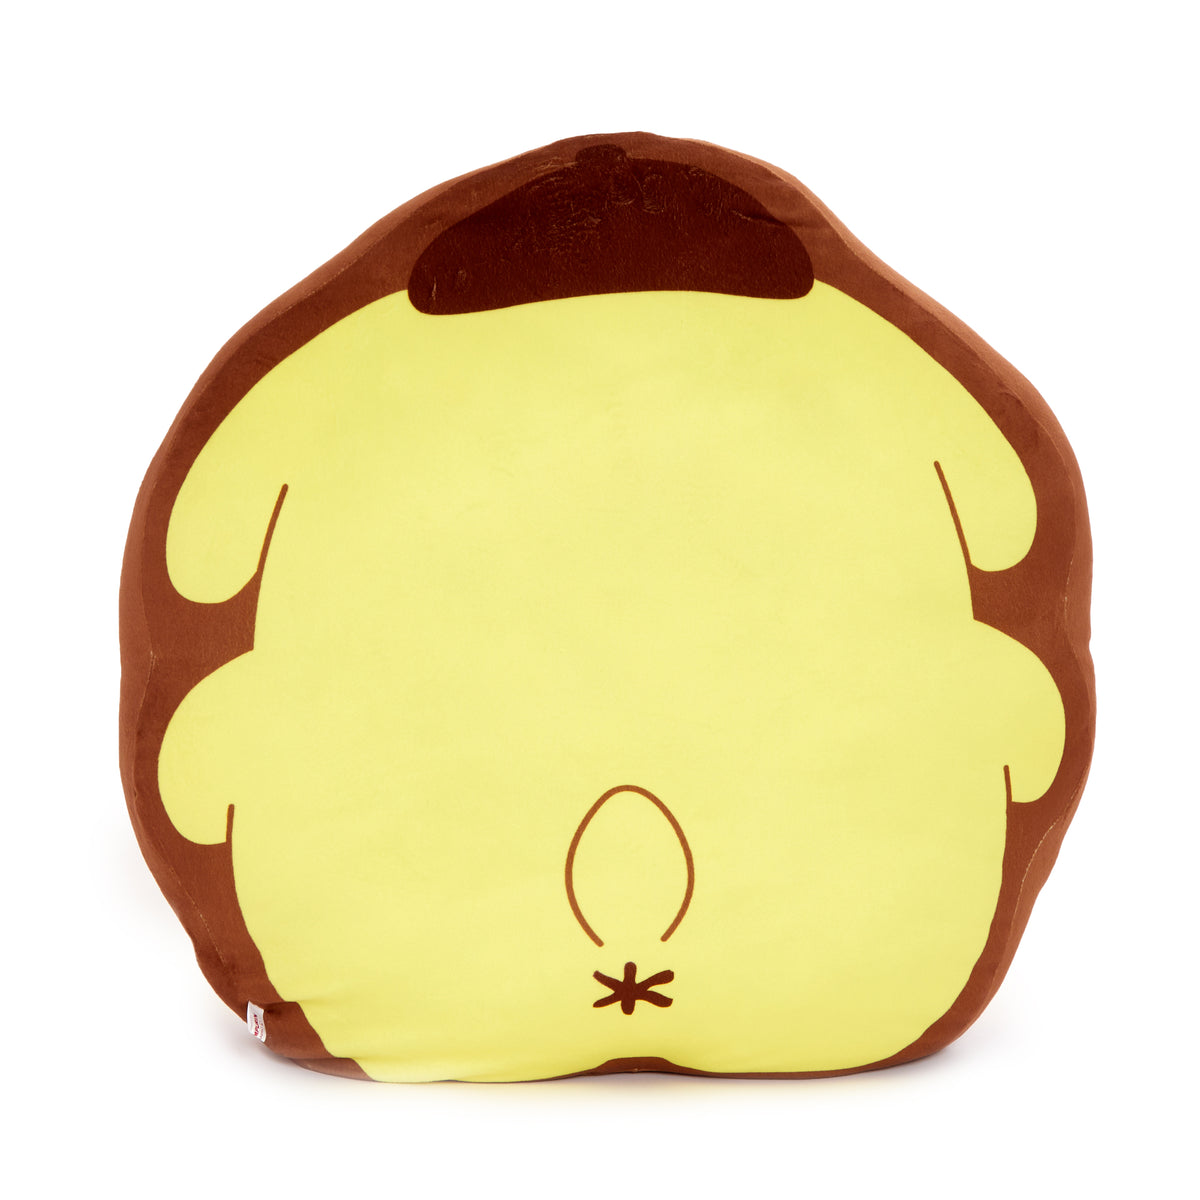 Pompompourin x Potetan Throw Pillow Home Goods Sanrio Original   